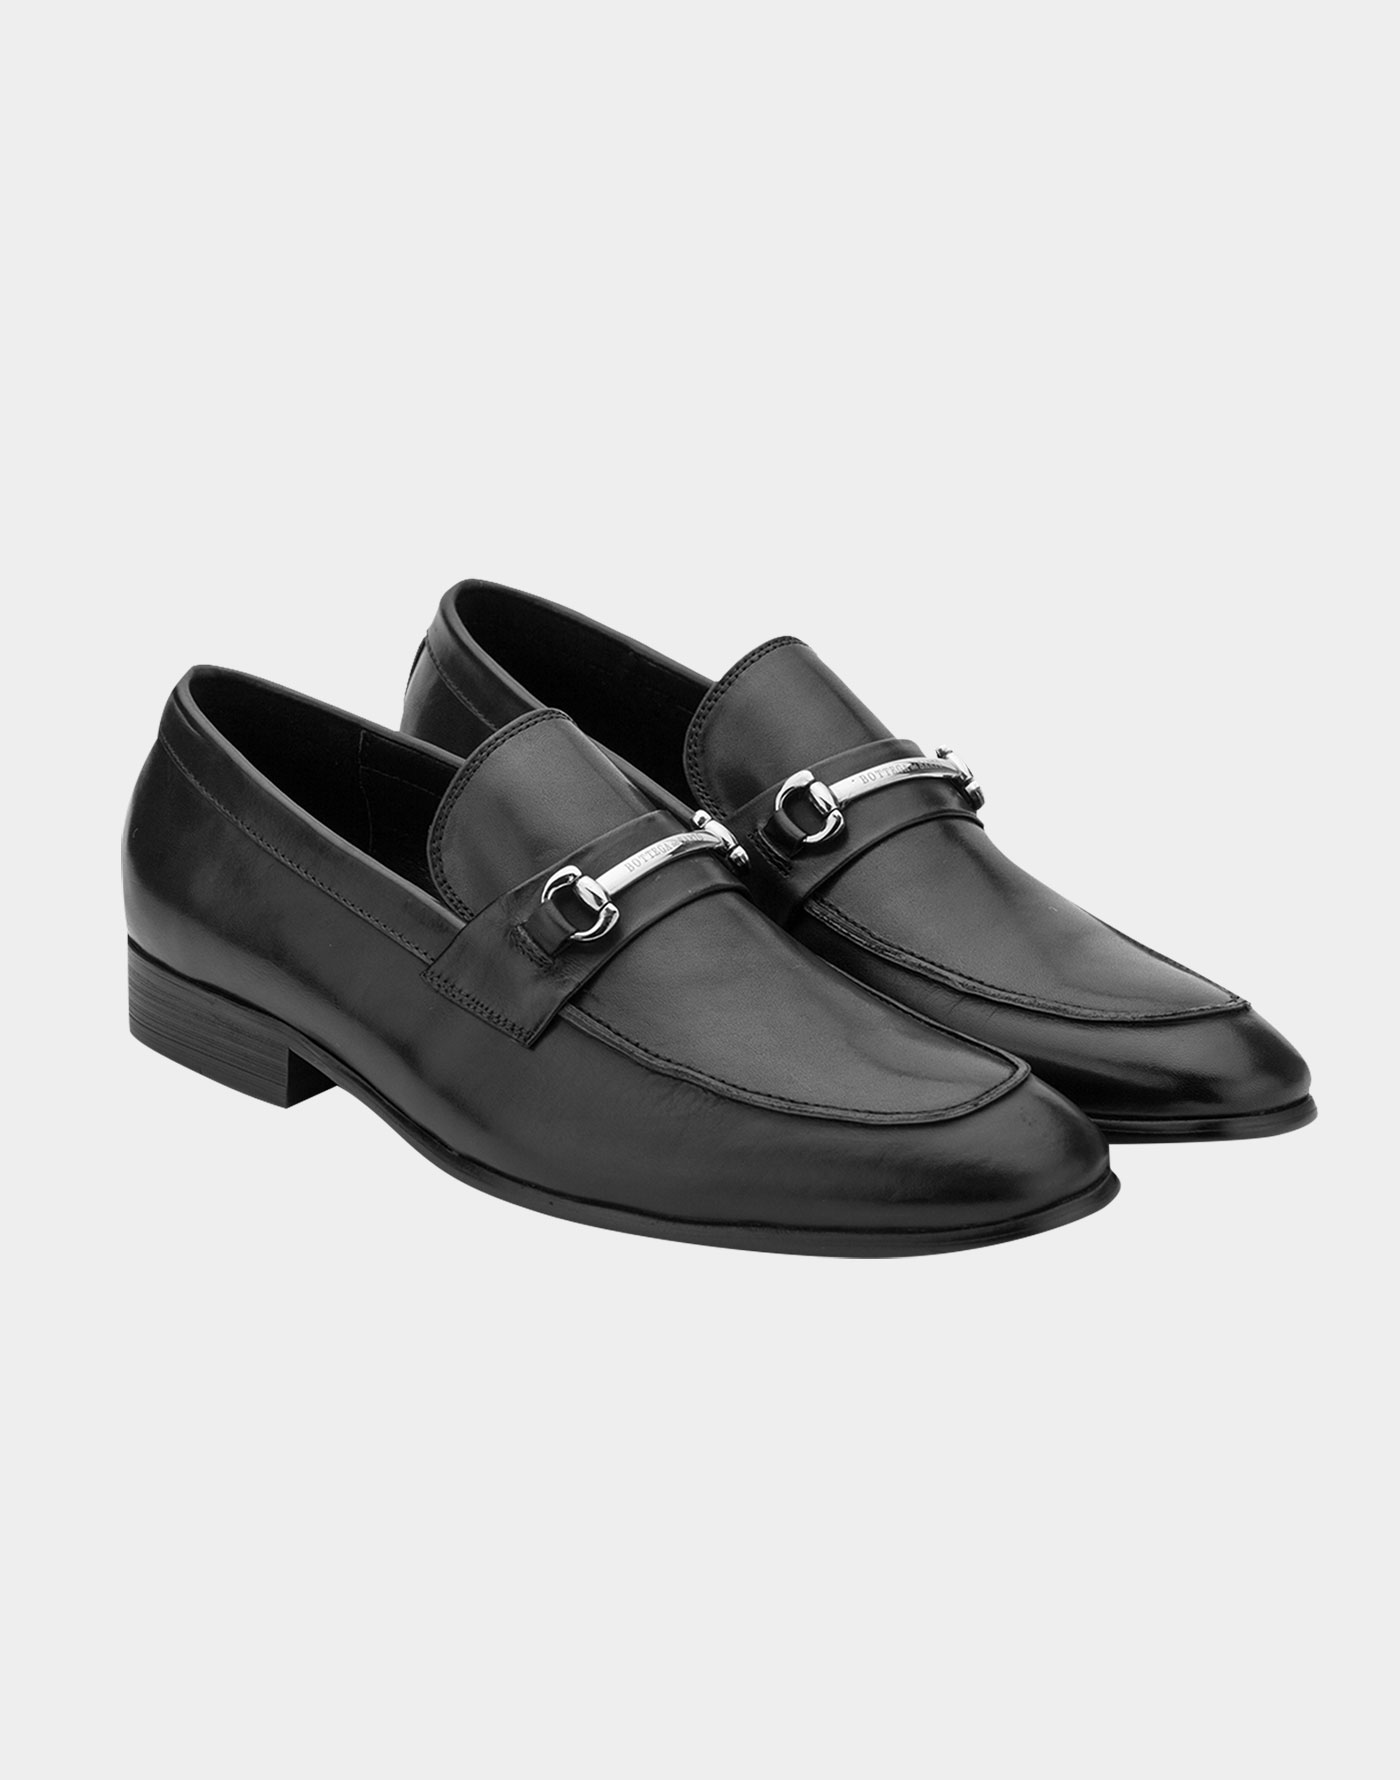 Black Leather Loafers With Strap - Bottega Del Sarto